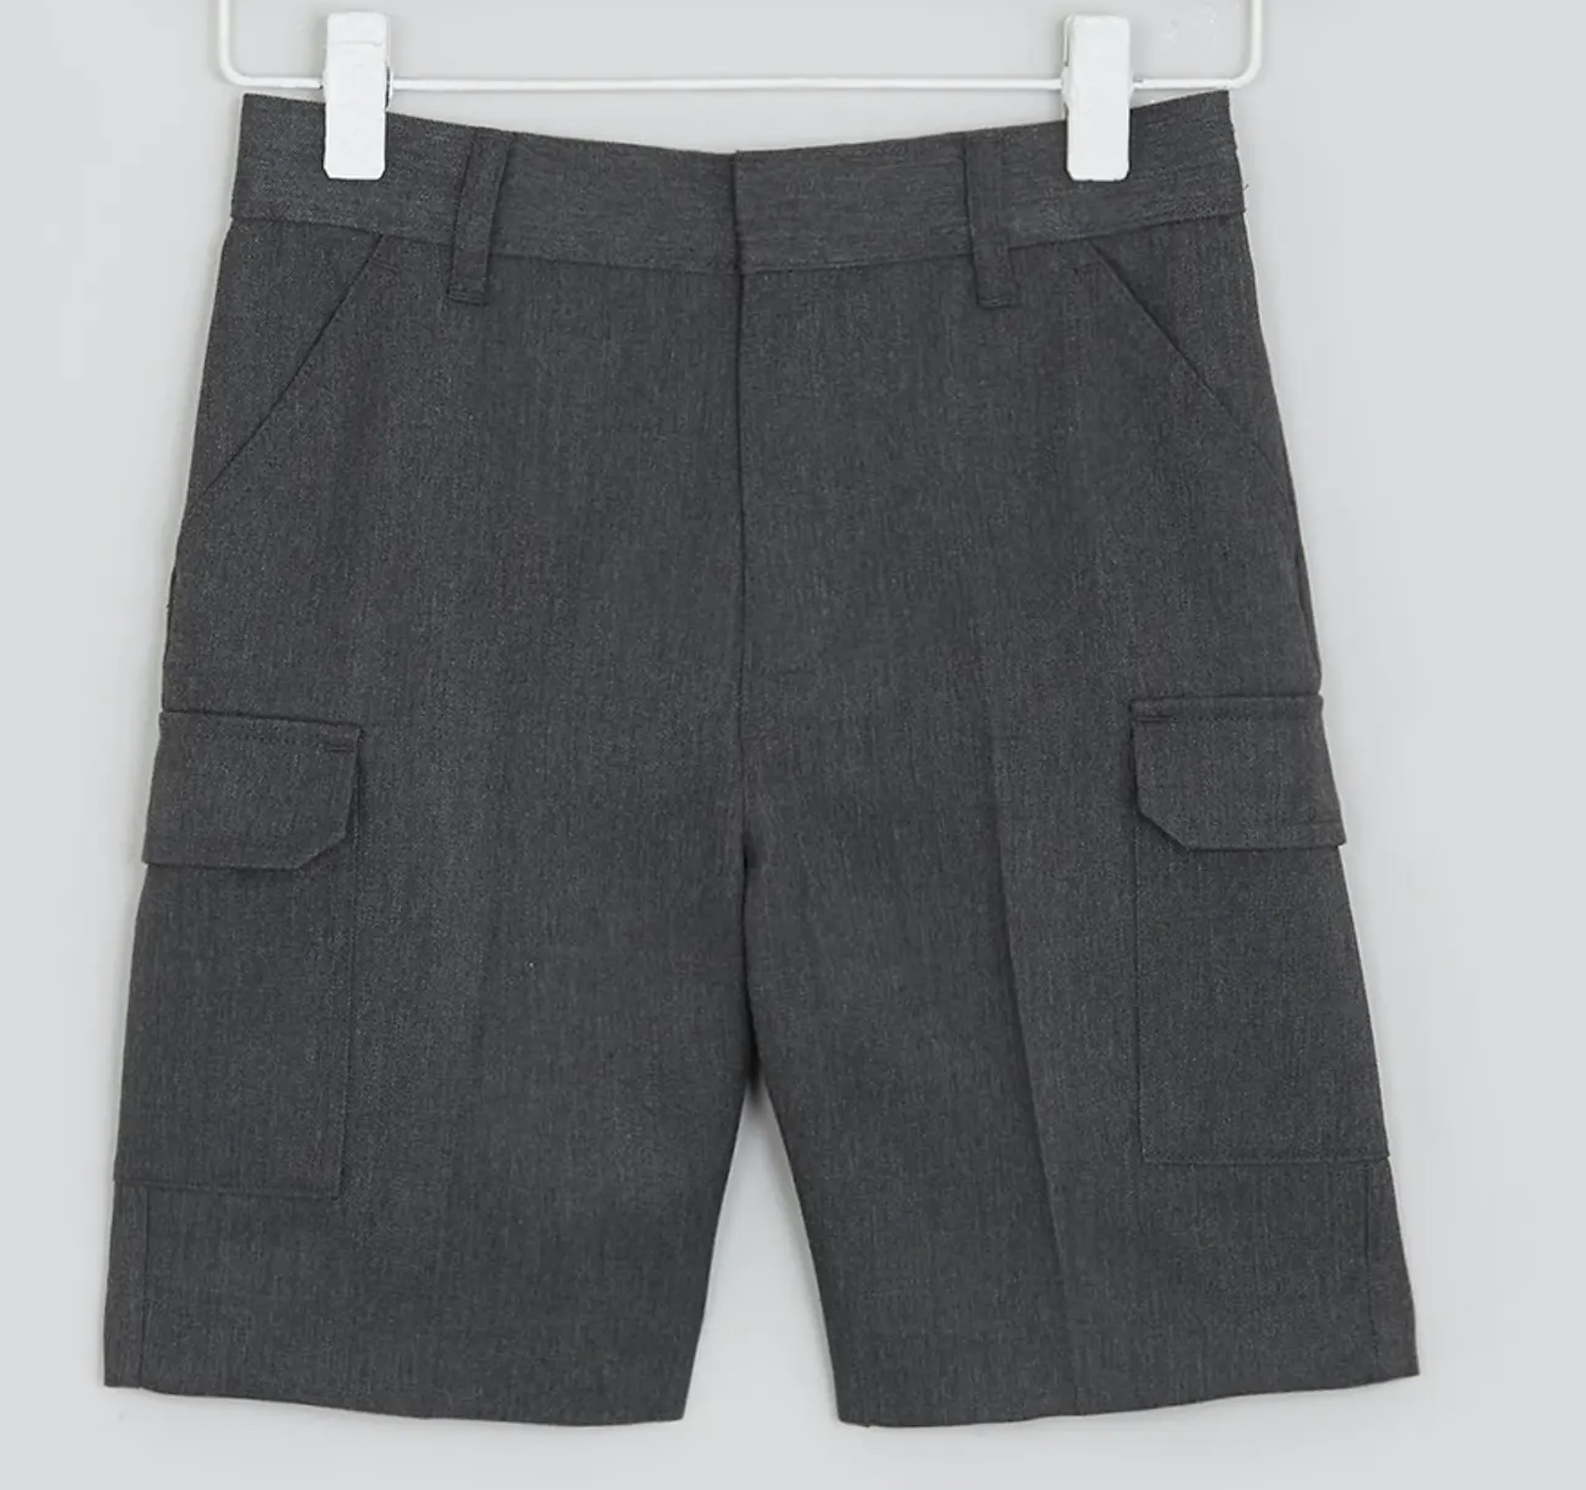 Boys' Dark Grey Cargo Shorts, Flat Front, Adjustable Waist, Four Pockets 5-6 Y